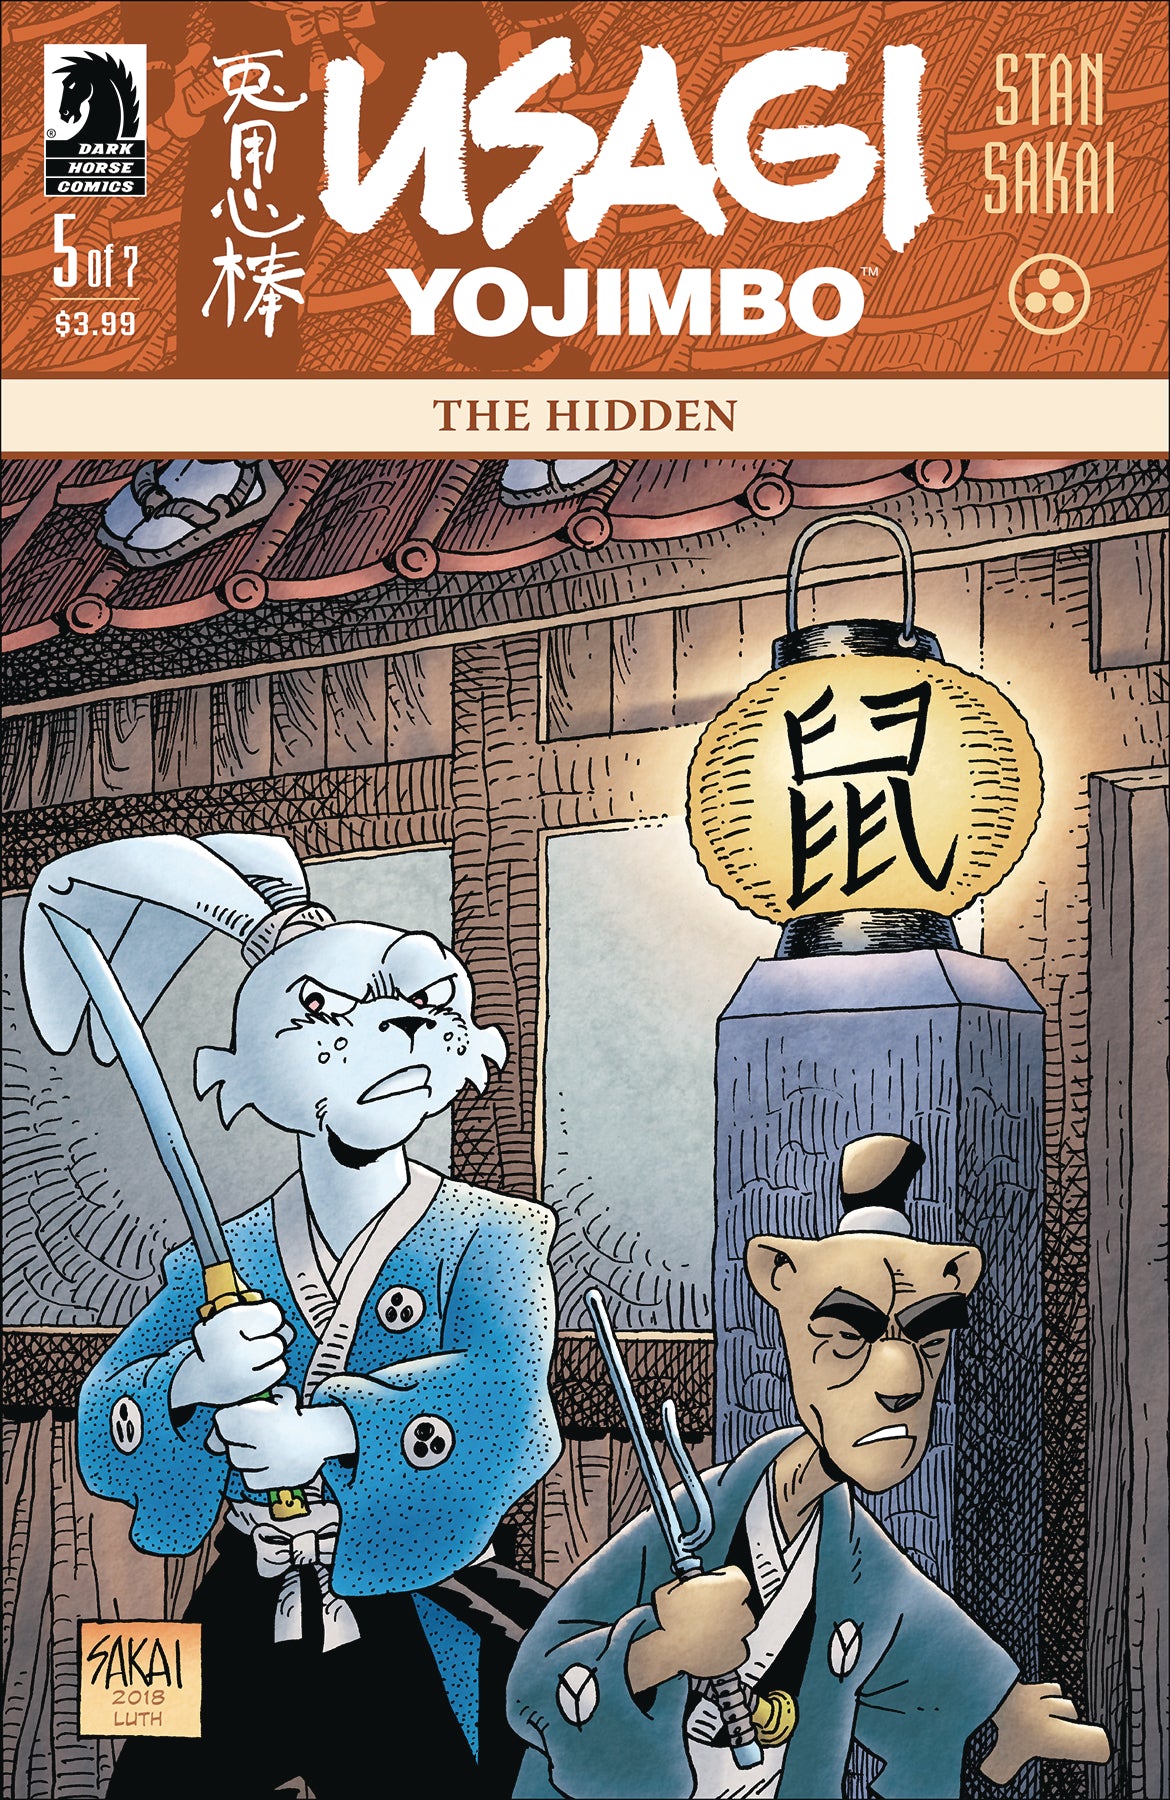 USAGI YOJIMBO #5 (OF 7) THE HIDDEN COVER